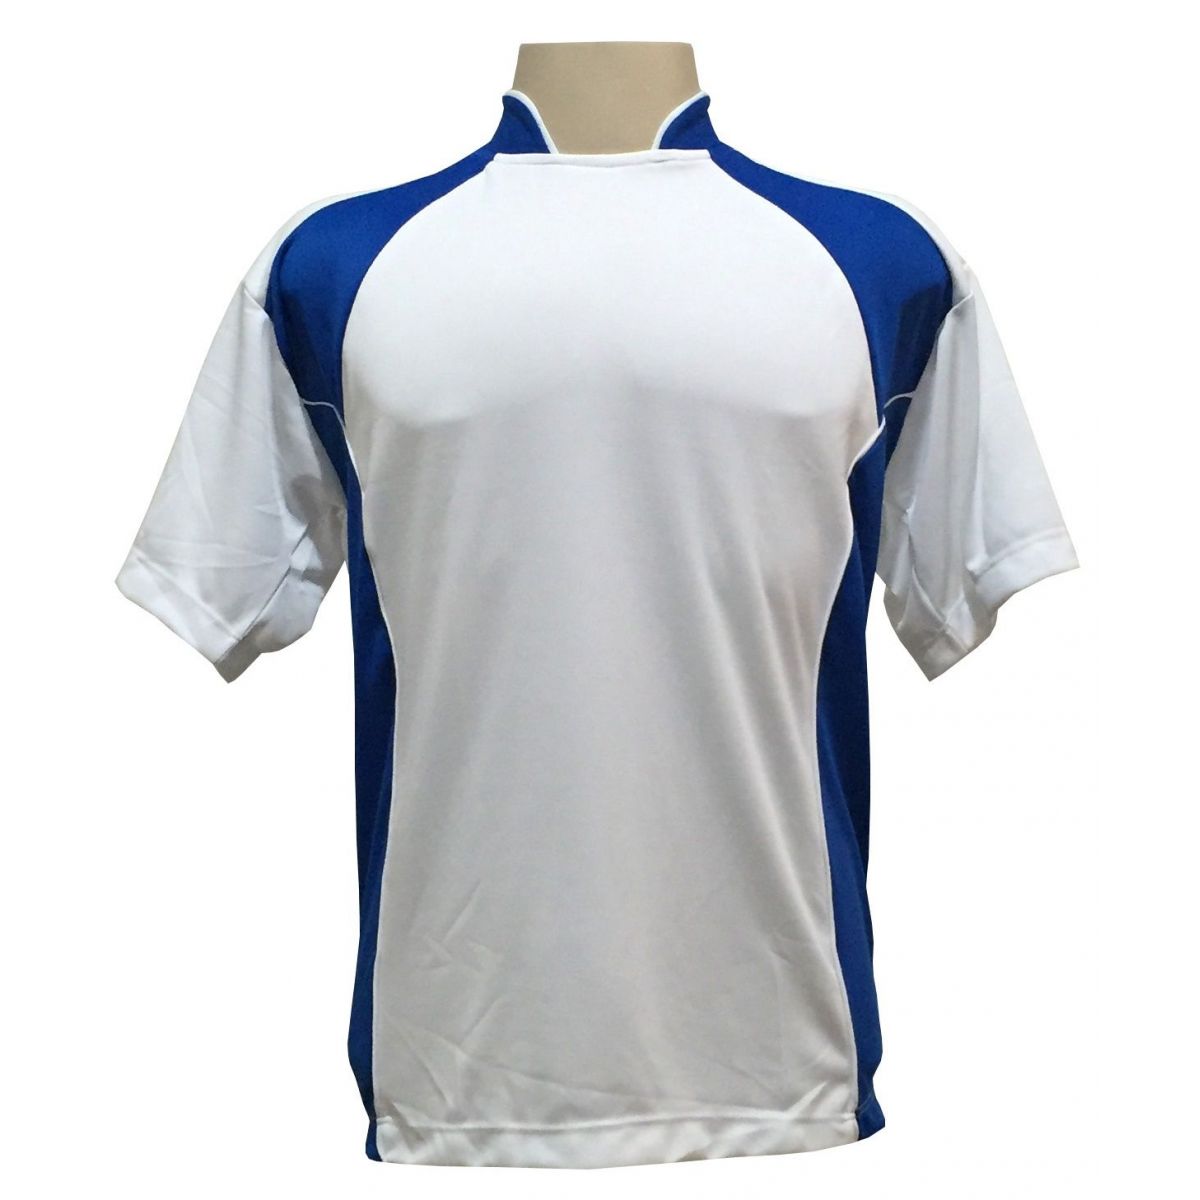 Uniforme Esportivo Completo modelo Suécia 14+1 (14 camisas Branco/Royal + 14 calções Madrid Branco+ 14 pares de meiões + 1 conjunto de goleiro) + Brindes